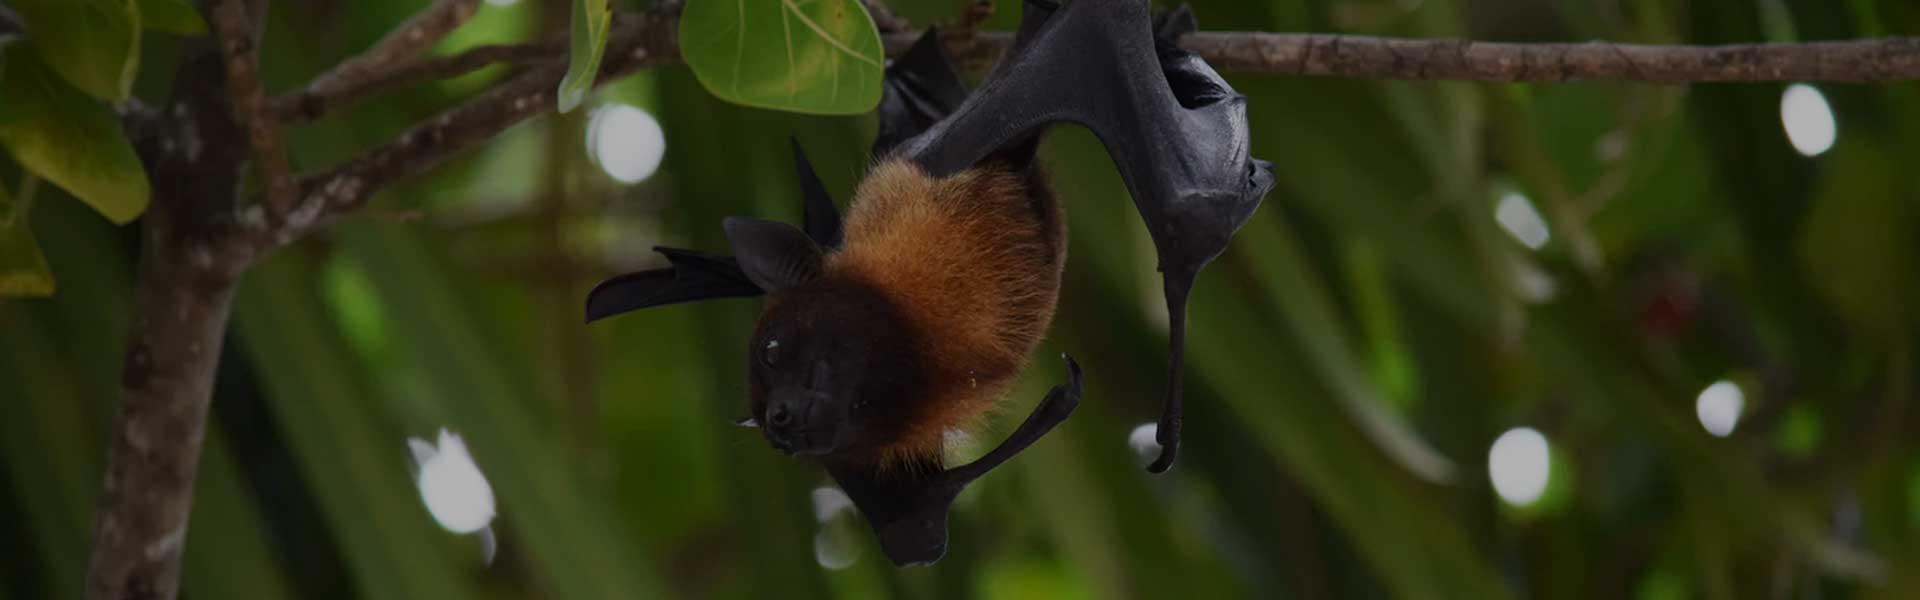 bats-banner